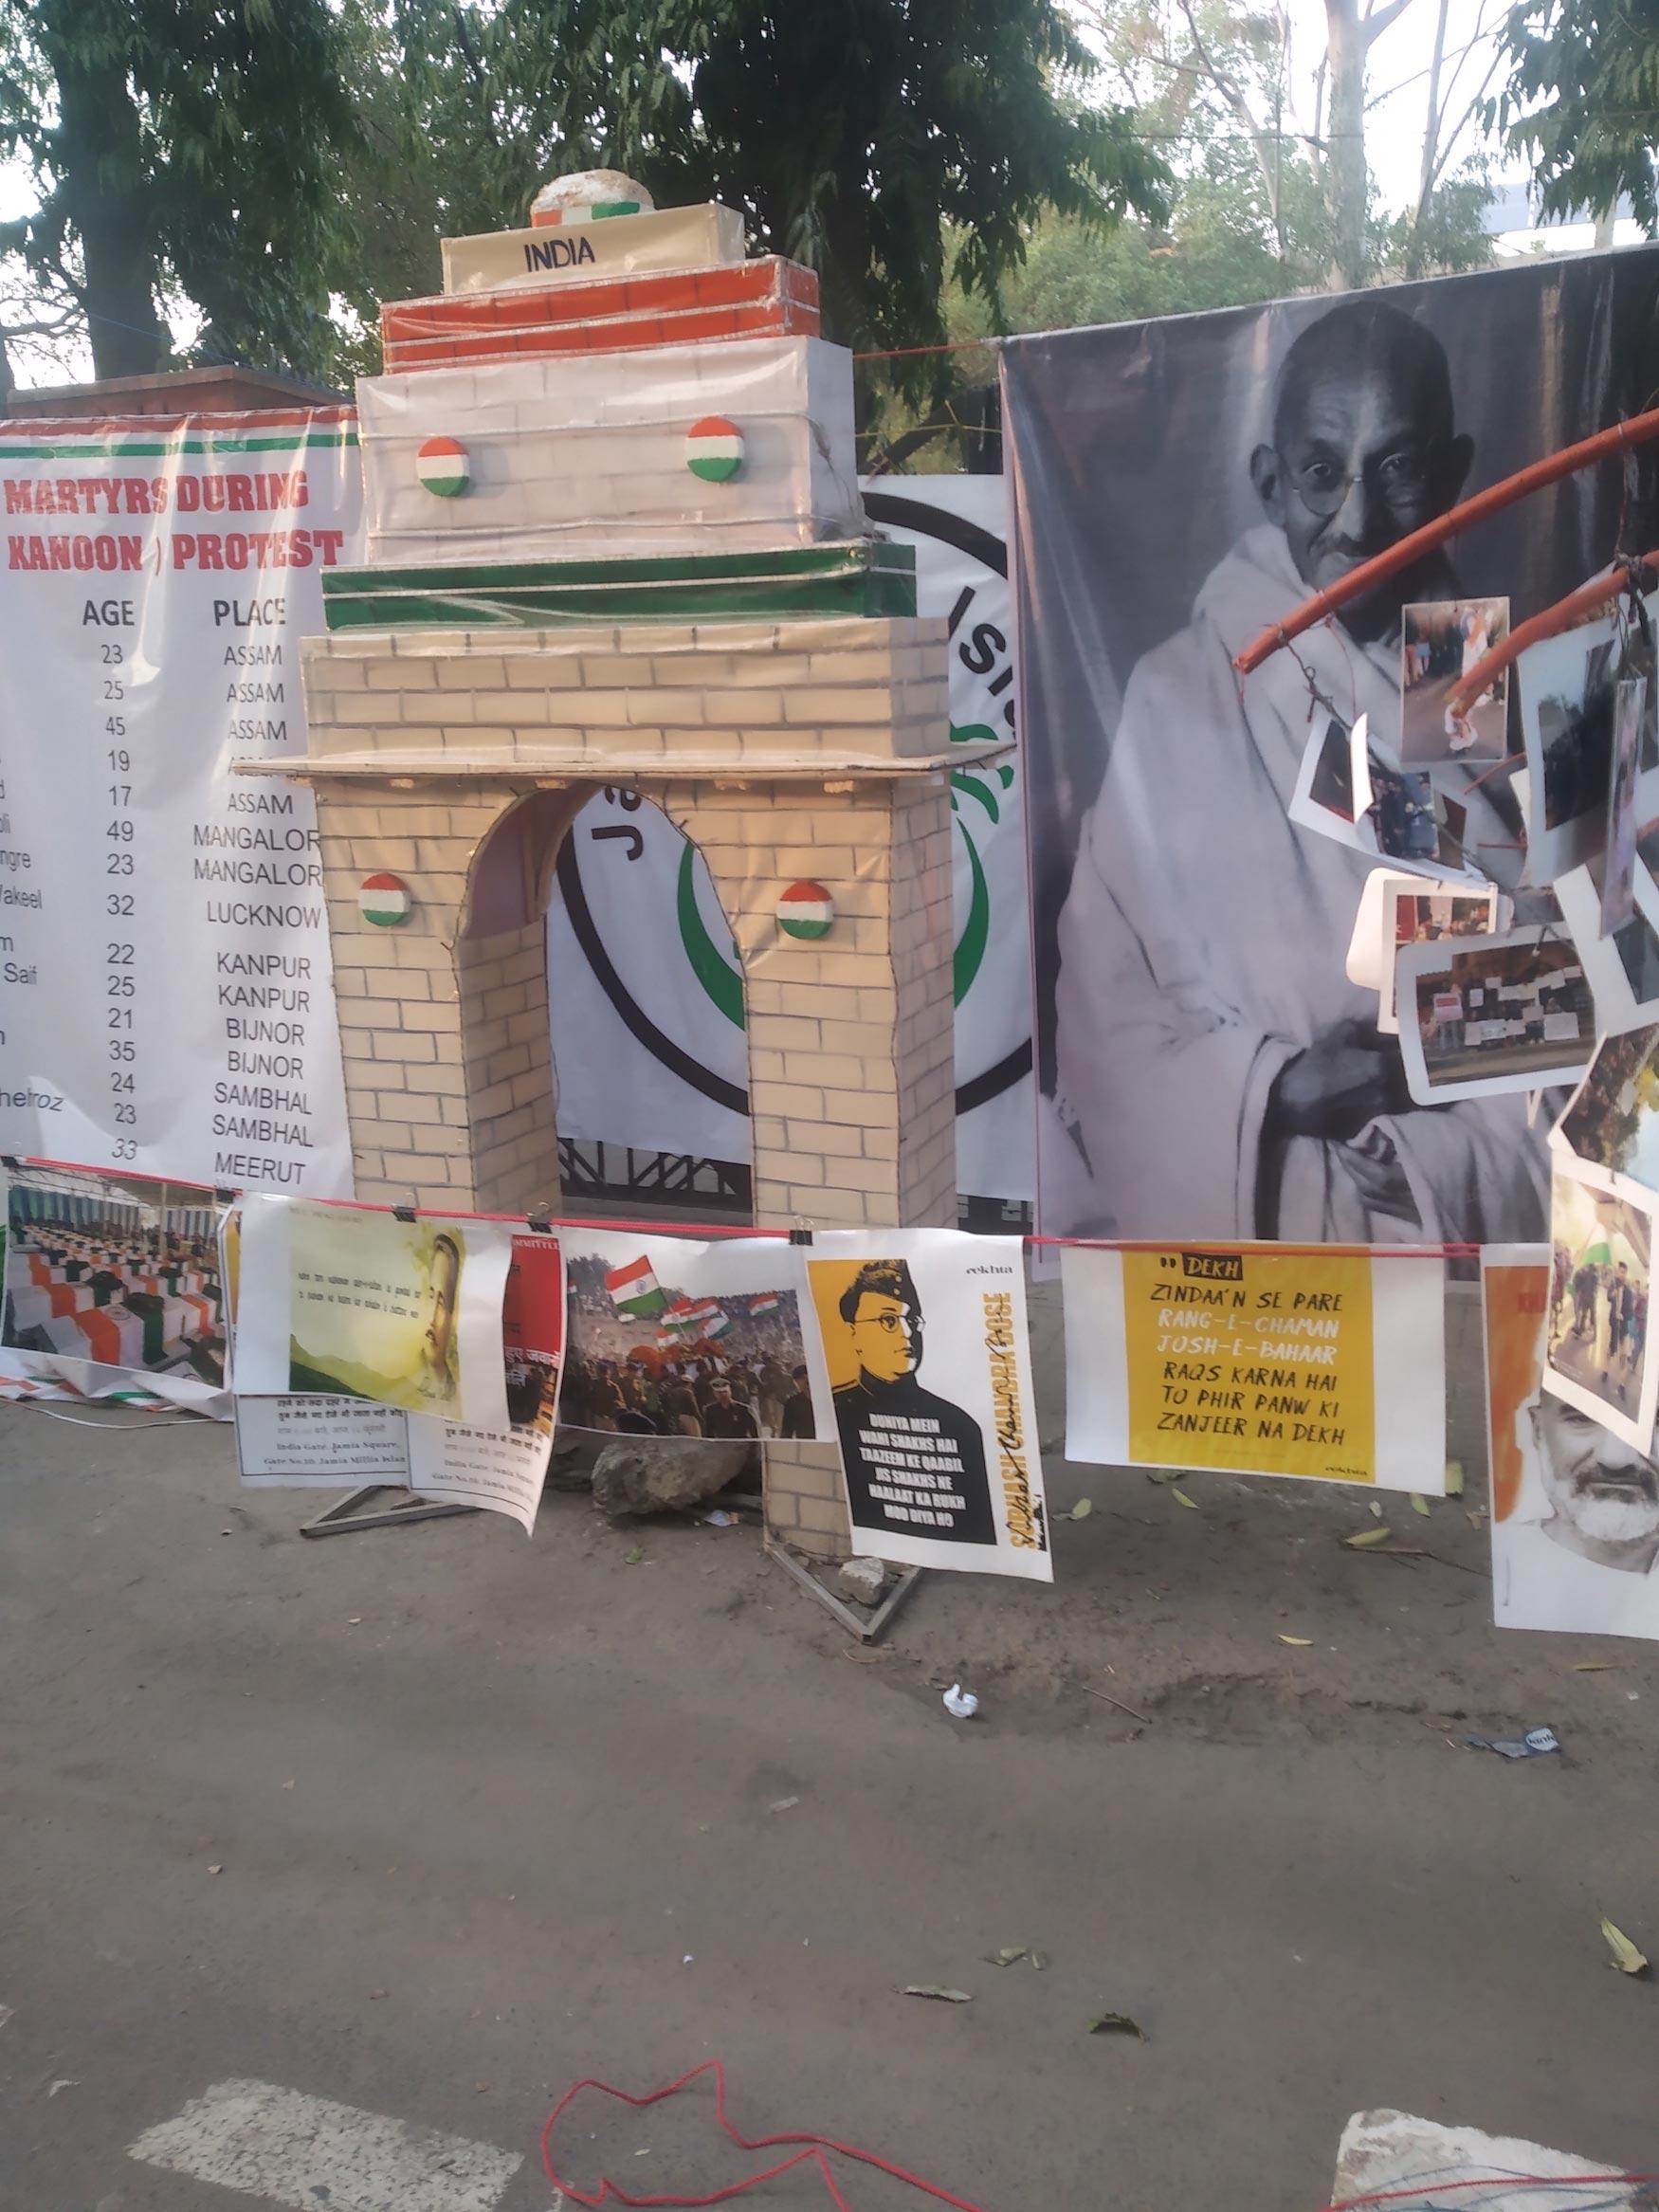 Miniature India Gate at the protest site in Jamia Millia Islamia (central university), Delhi.